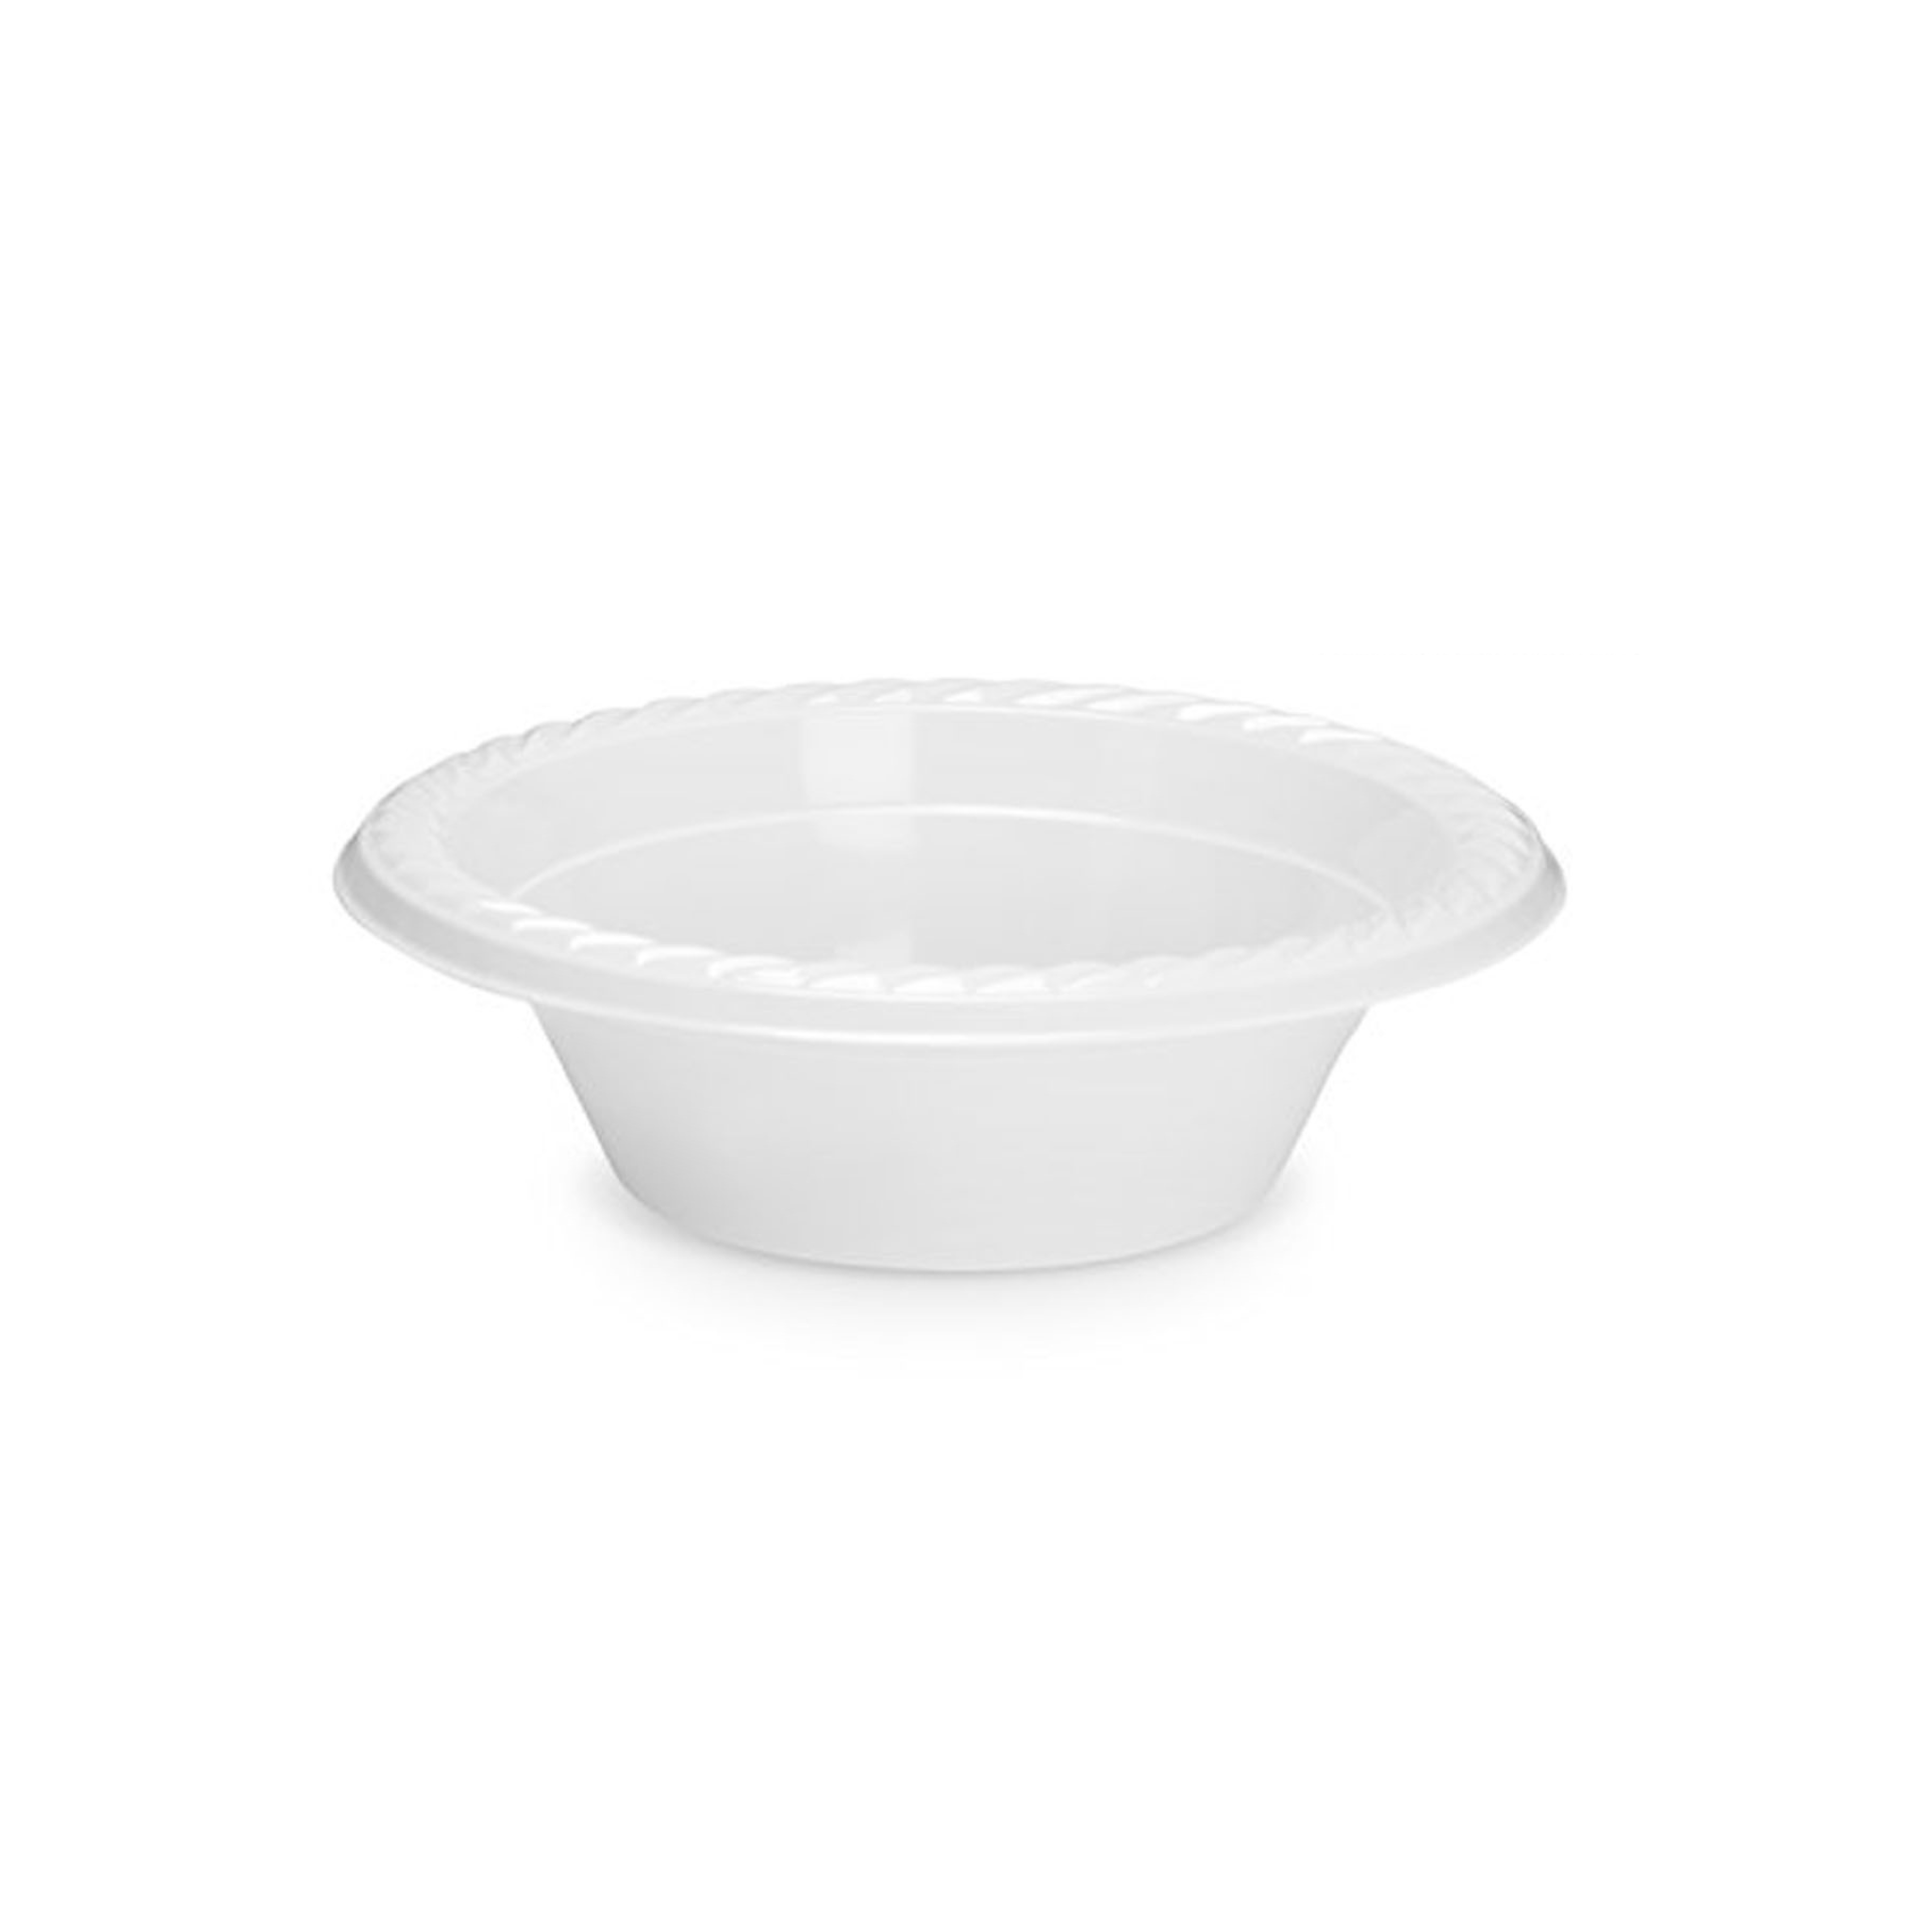 12 Oz. White Plastic Bowls | 800 Count